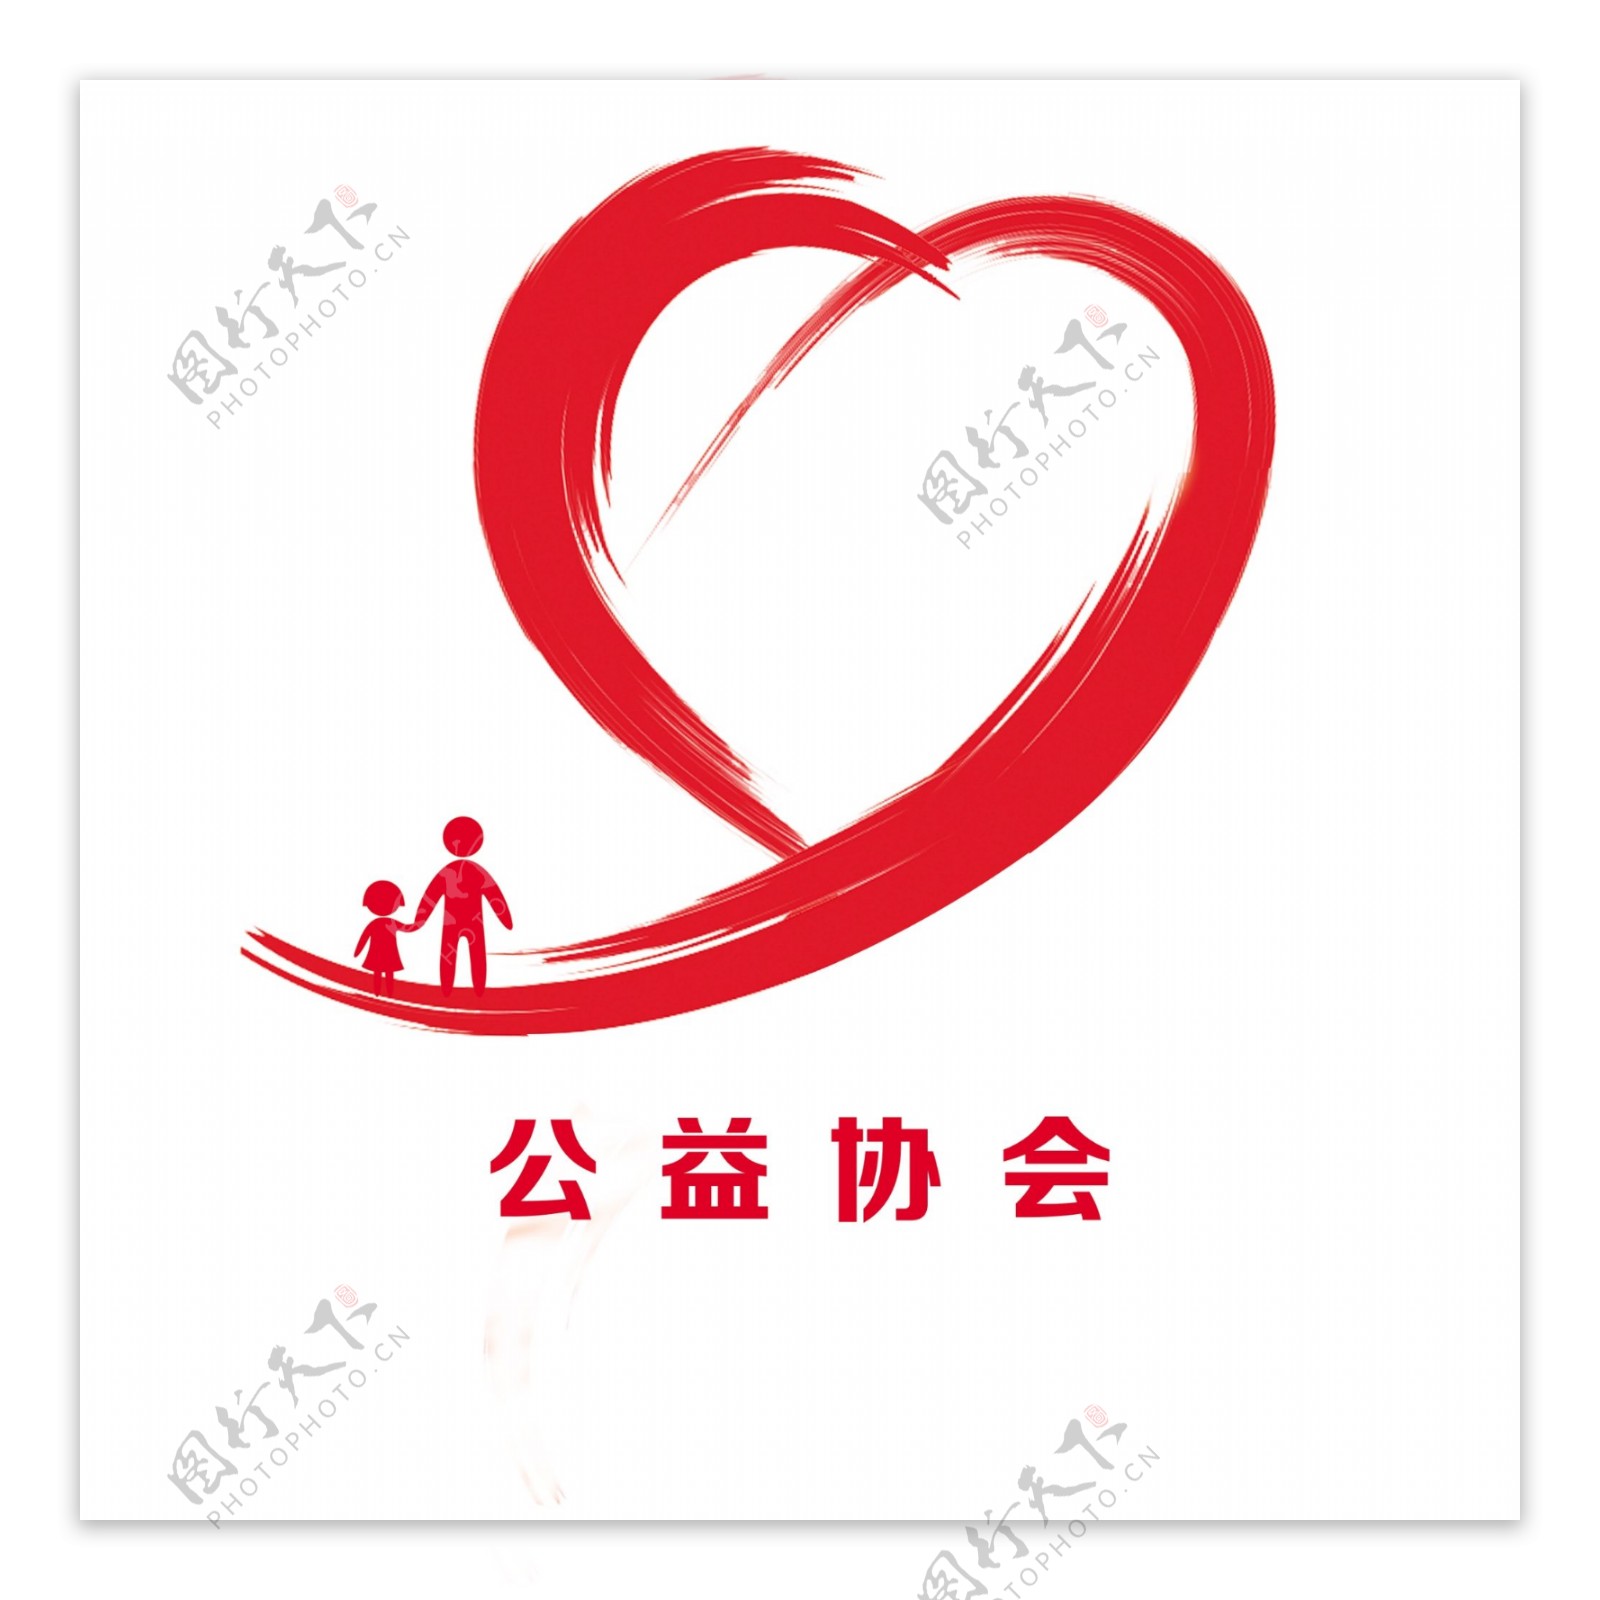 红心logo